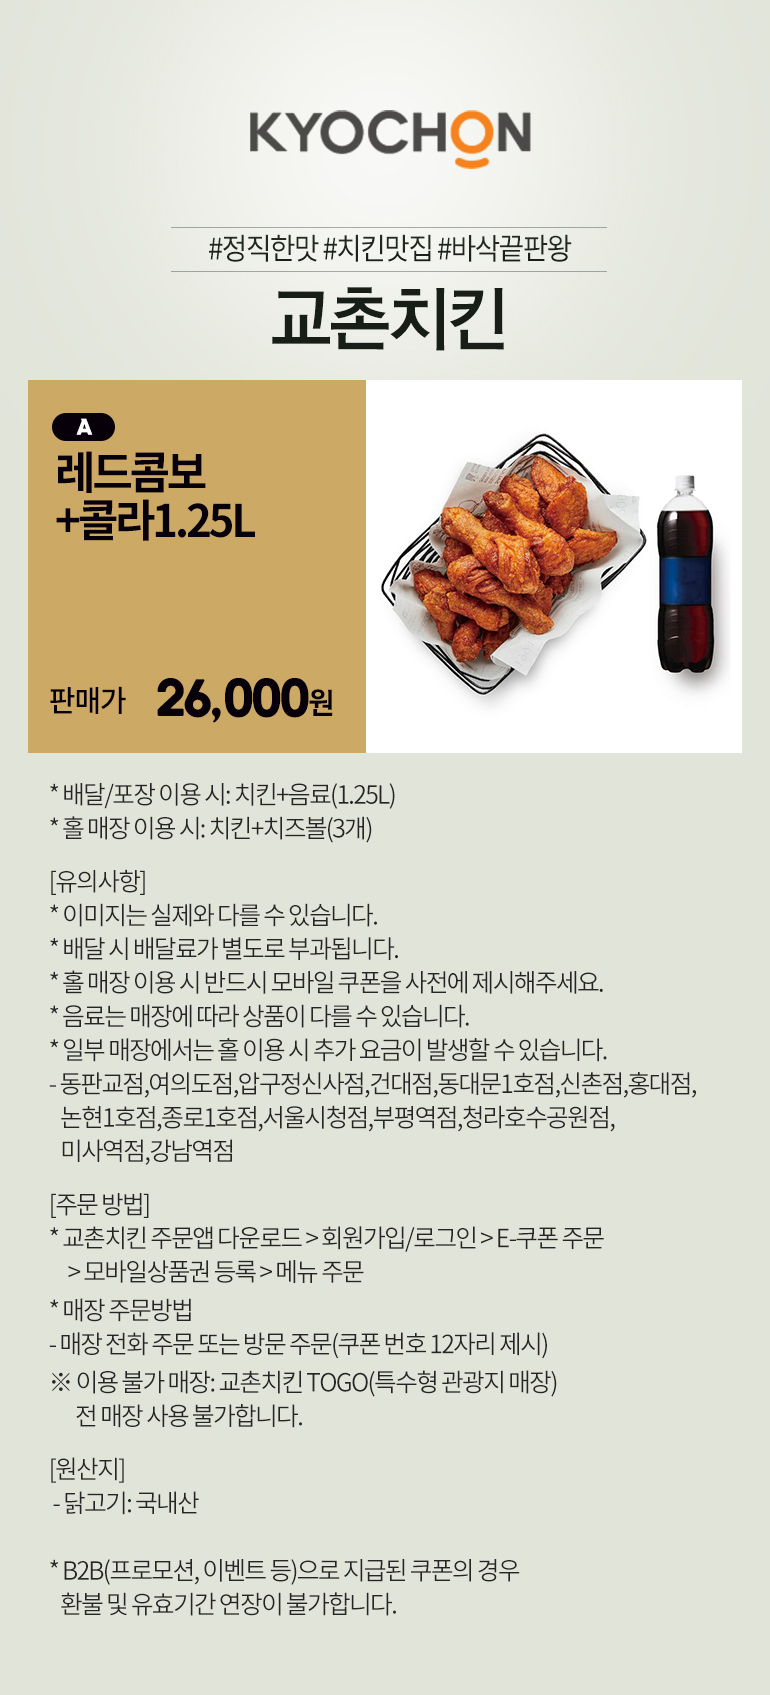 교촌치킨] 레드콤보+콜라1.25L 메뉴권 판매 - 티몬